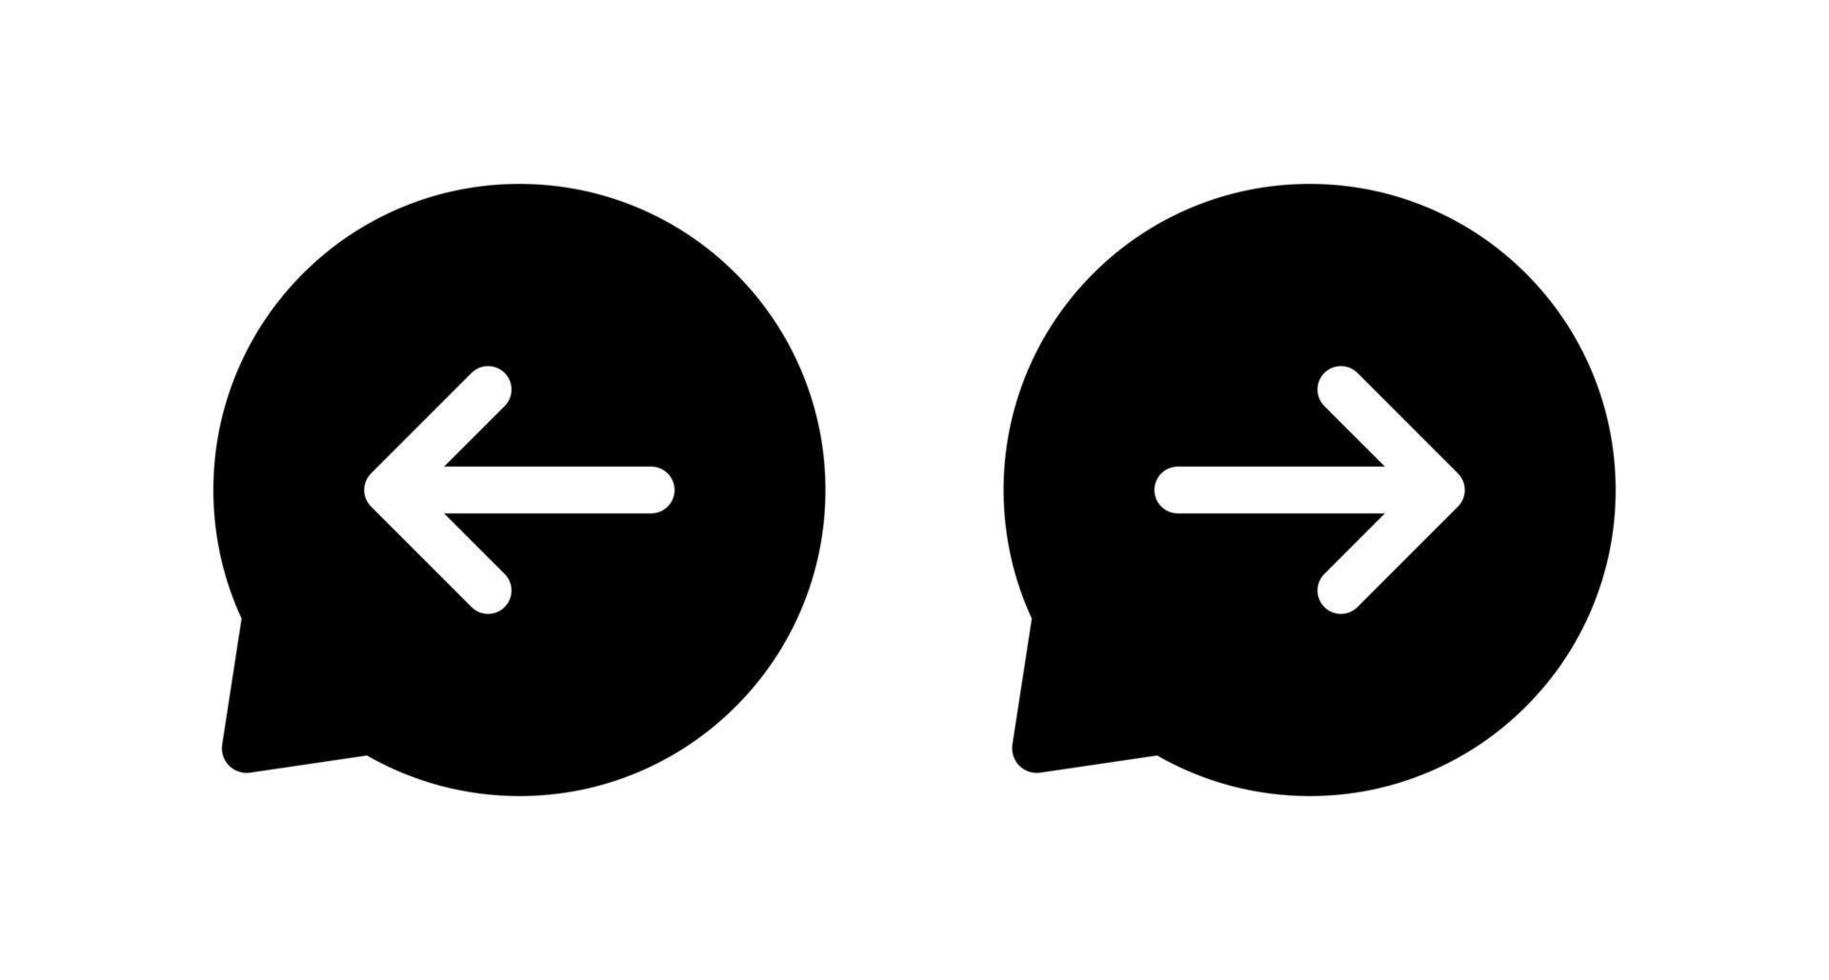 tournez l'icône de flèche droite et gauche sur la ligne de bulle de parole. vecteur de symbole de signe avant et arrière